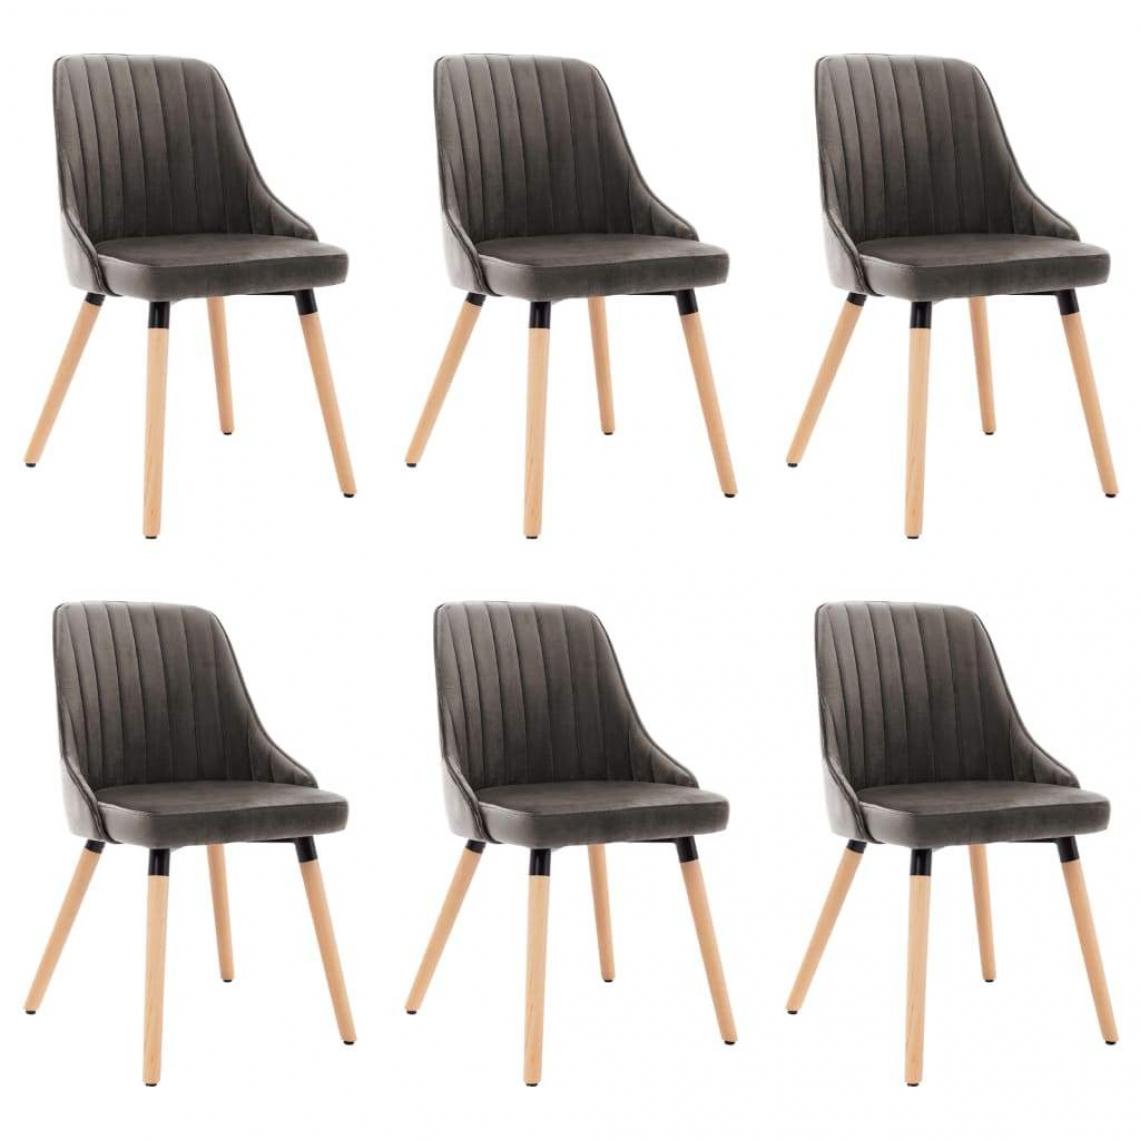 Decoshop26 - Lot de 6 chaises de salle à manger cuisine design moderne velours gris foncé CDS022466 - Chaises